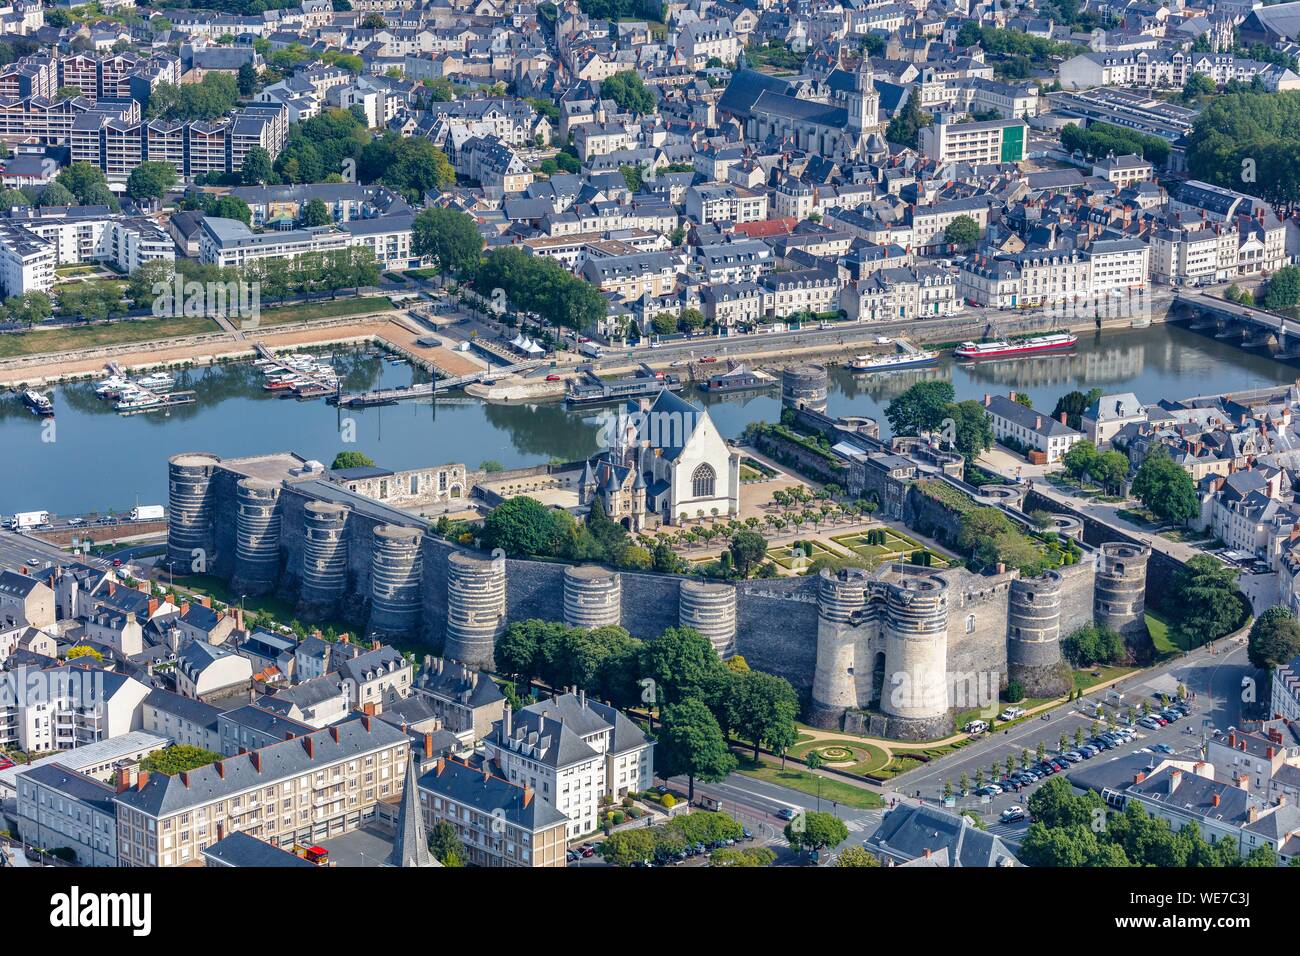 Francia, Maine et Loire, la Valle della Loira sono classificati come patrimonio mondiale dall' UNESCO, Angers, il castello nei pressi del fiume Maine (vista aerea) Foto Stock